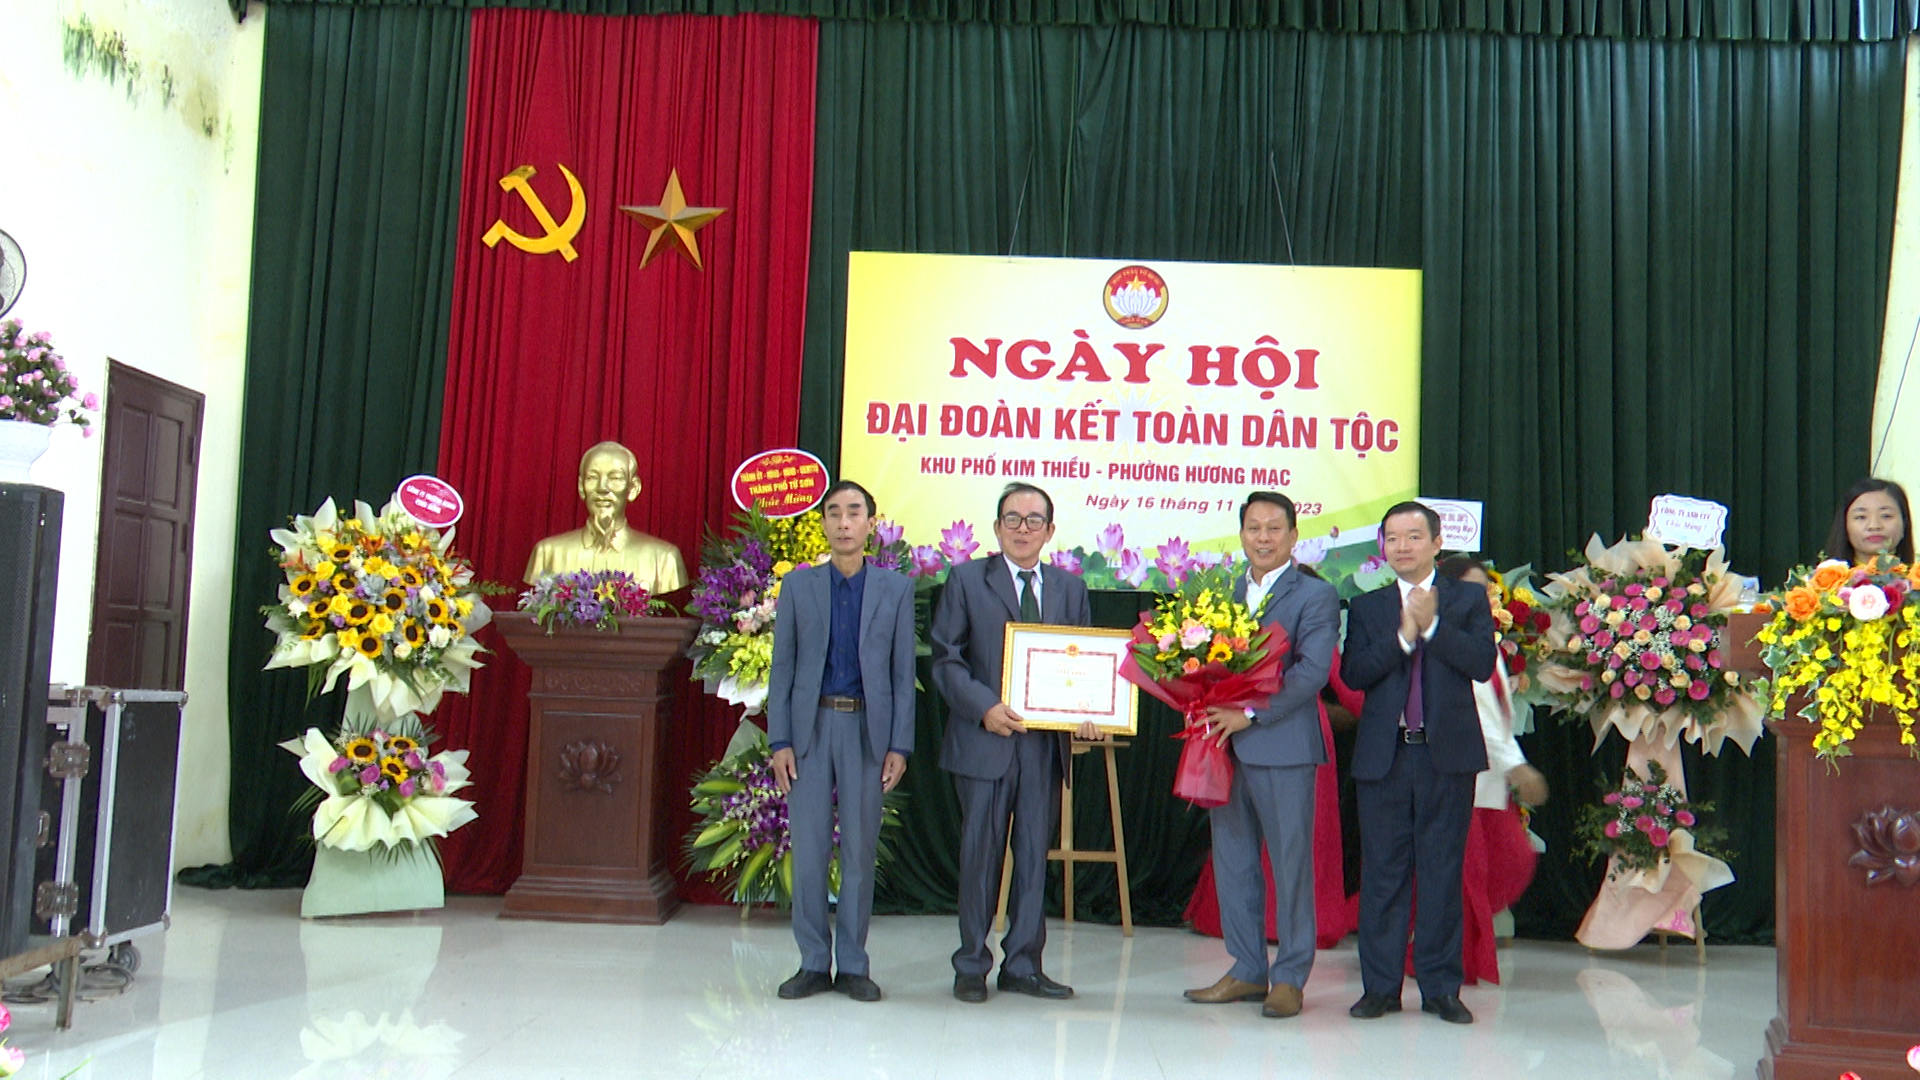 Đồng chí phó Bí thư TT Thành ủy dự ngày hội ĐĐK khu phố Kim Thiều